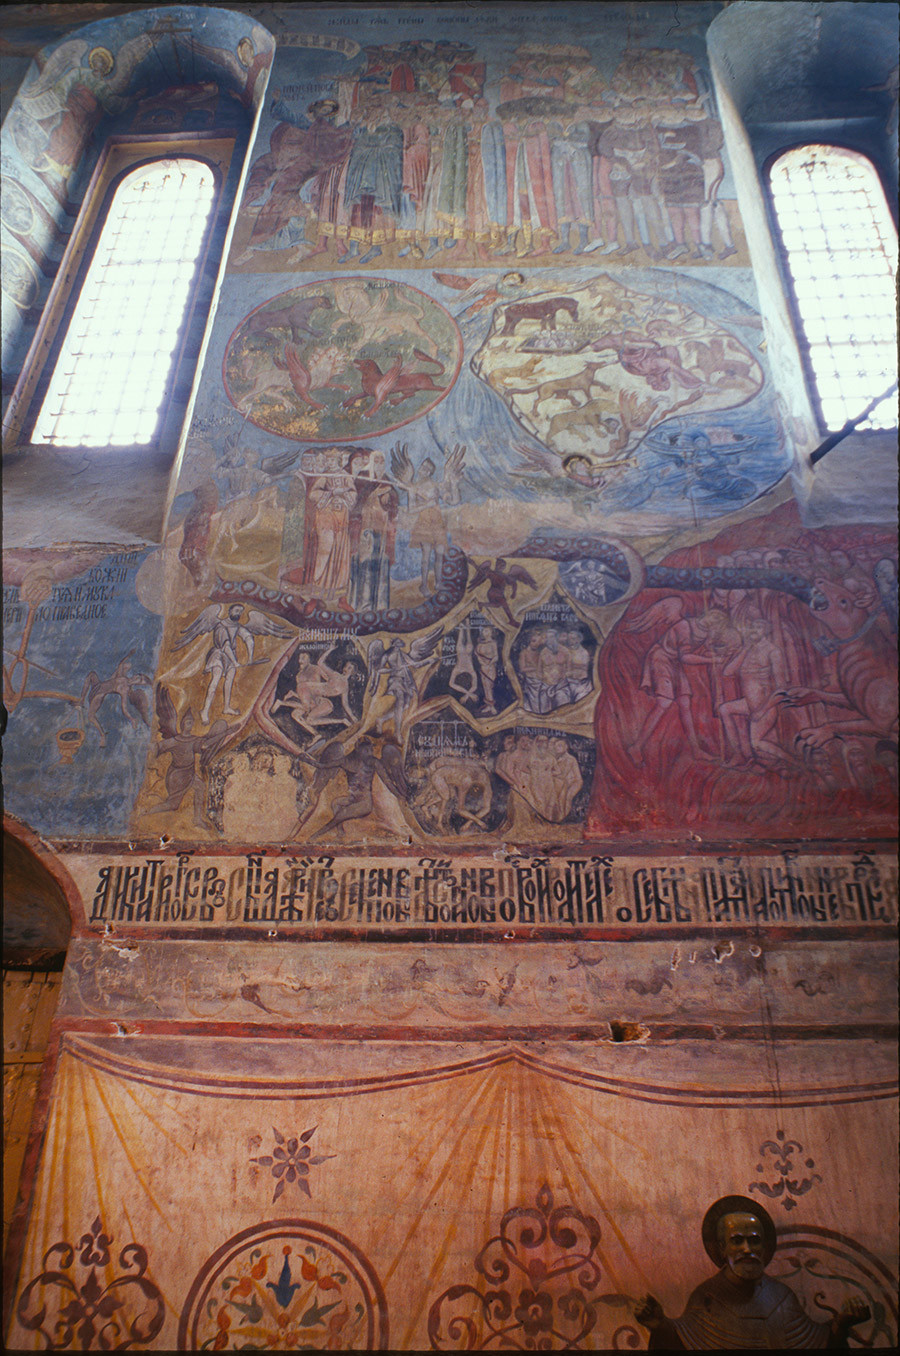 Cathédrale de l'Annonciation. Fresques du mur ouest, Jugement dernier avec représentation de pécheurs en enfer. 26 juin 1999
